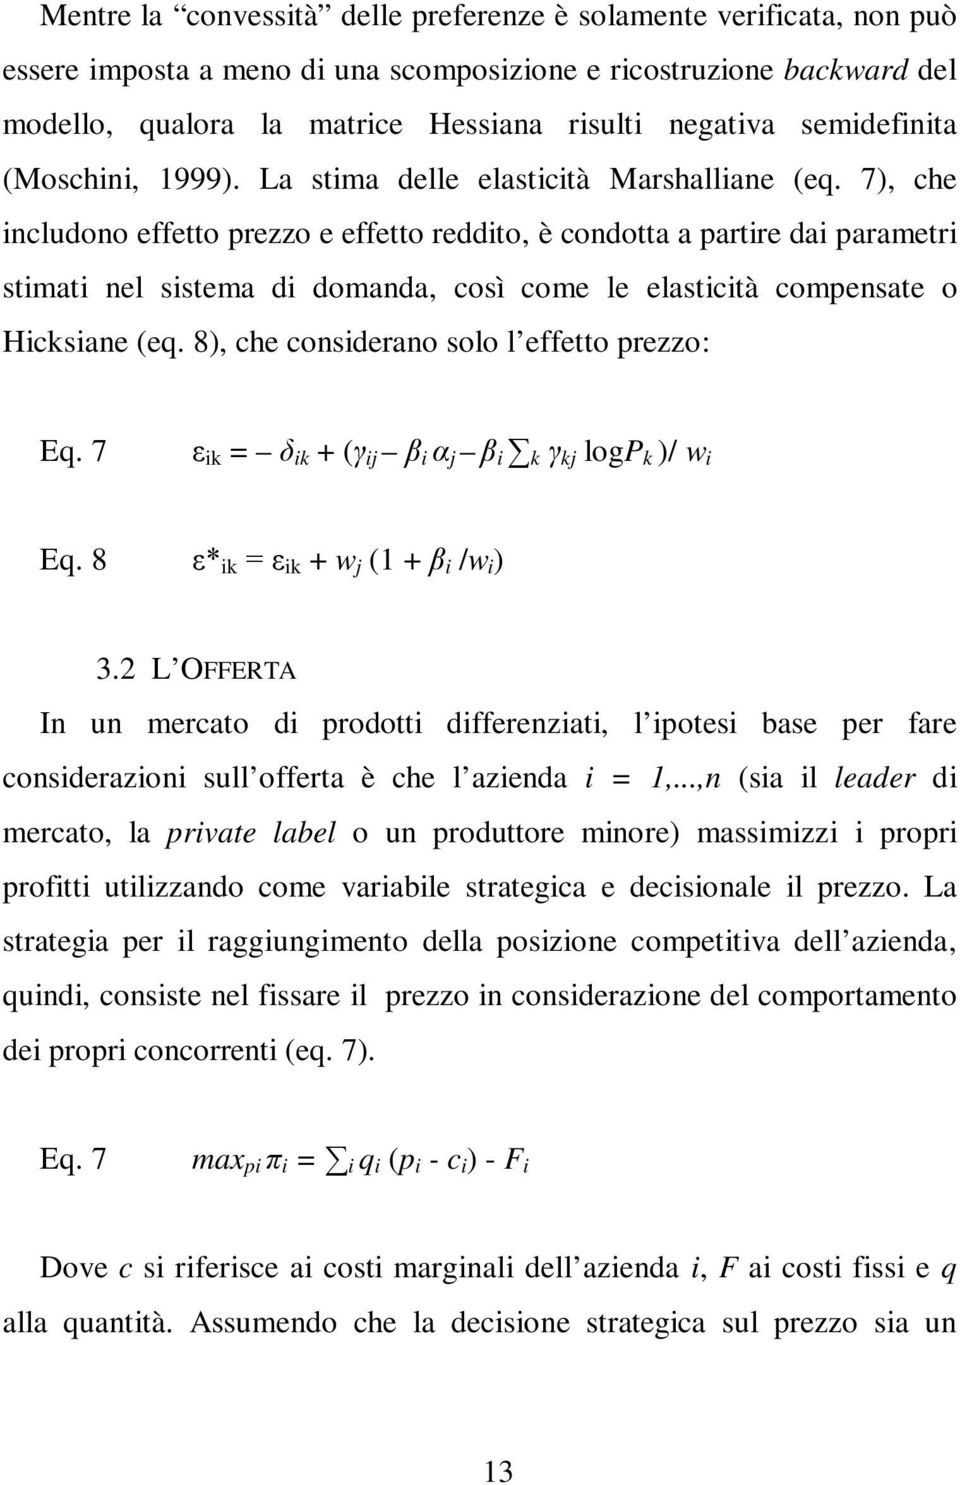 7), che includono effetto prezzo e effetto reddito, è condotta a partire dai parametri stimati nel sistema di domanda, così come le elasticità compensate o Hicksiane (eq.